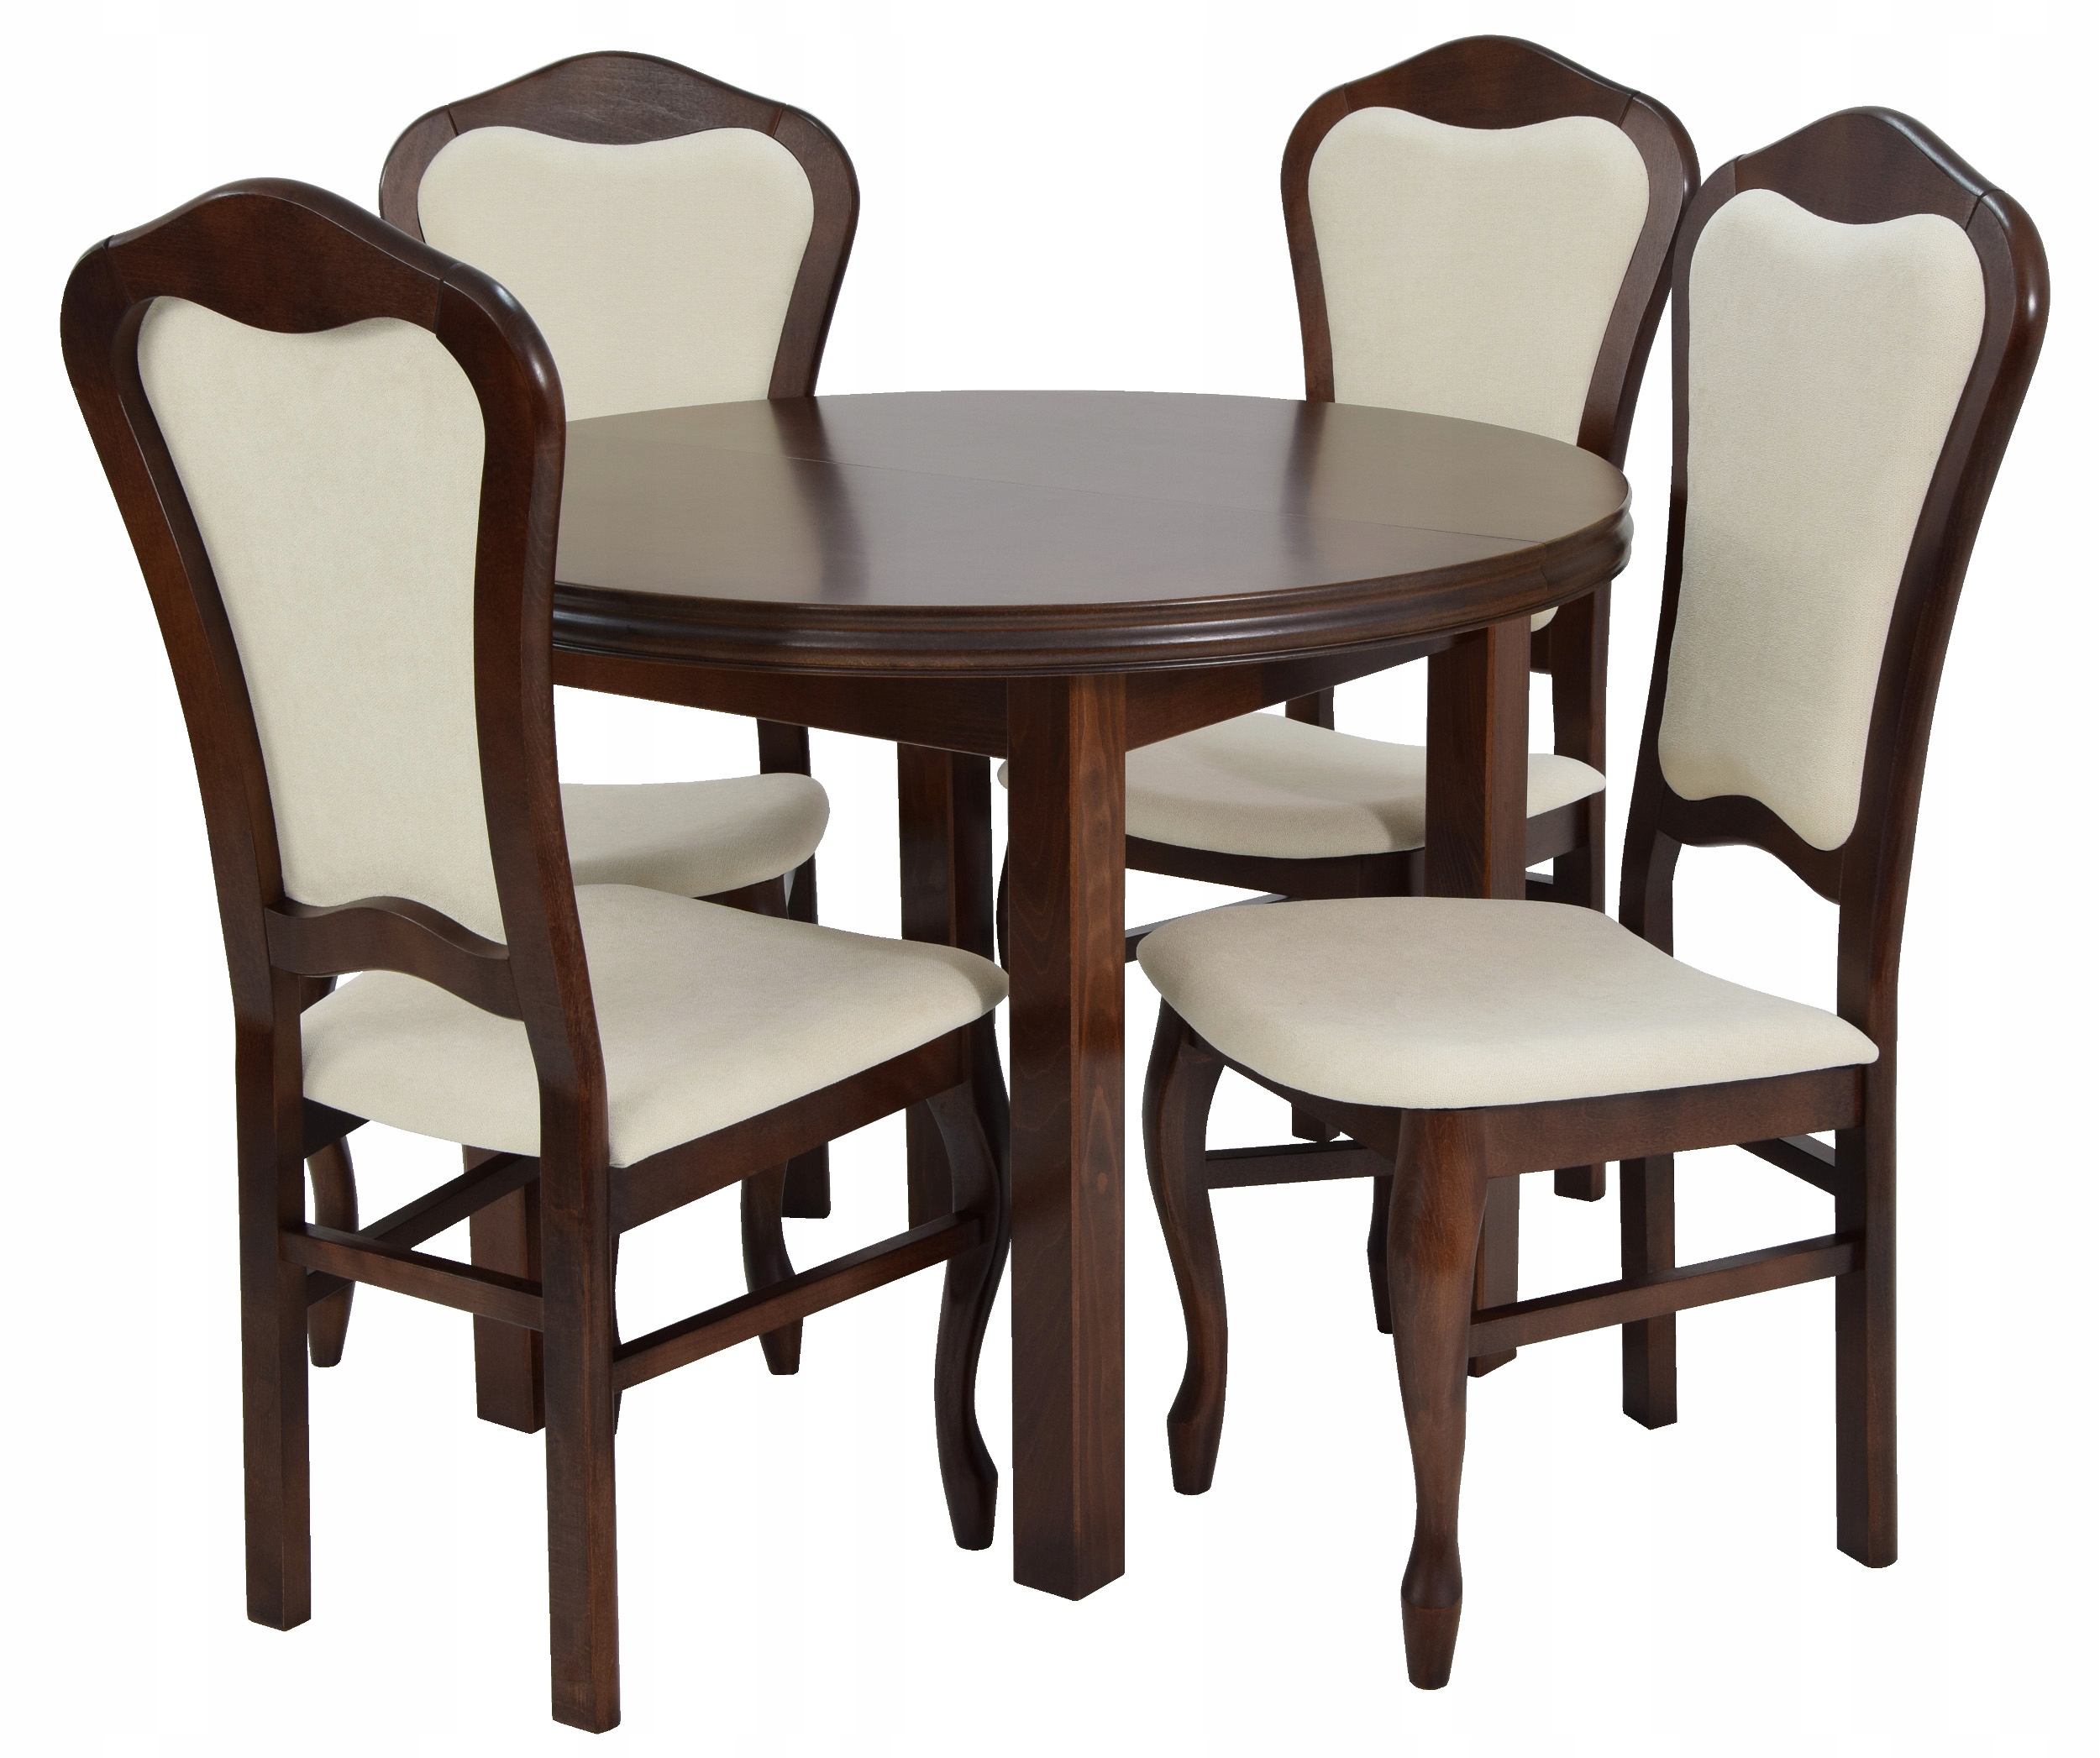 Столы стулья кухонные москва. Большой стол 12 стульев 100x200300. Комплект Langfang: стол + 4 стула. Столы и стулья для кухни. Кухонный стол и стулья.